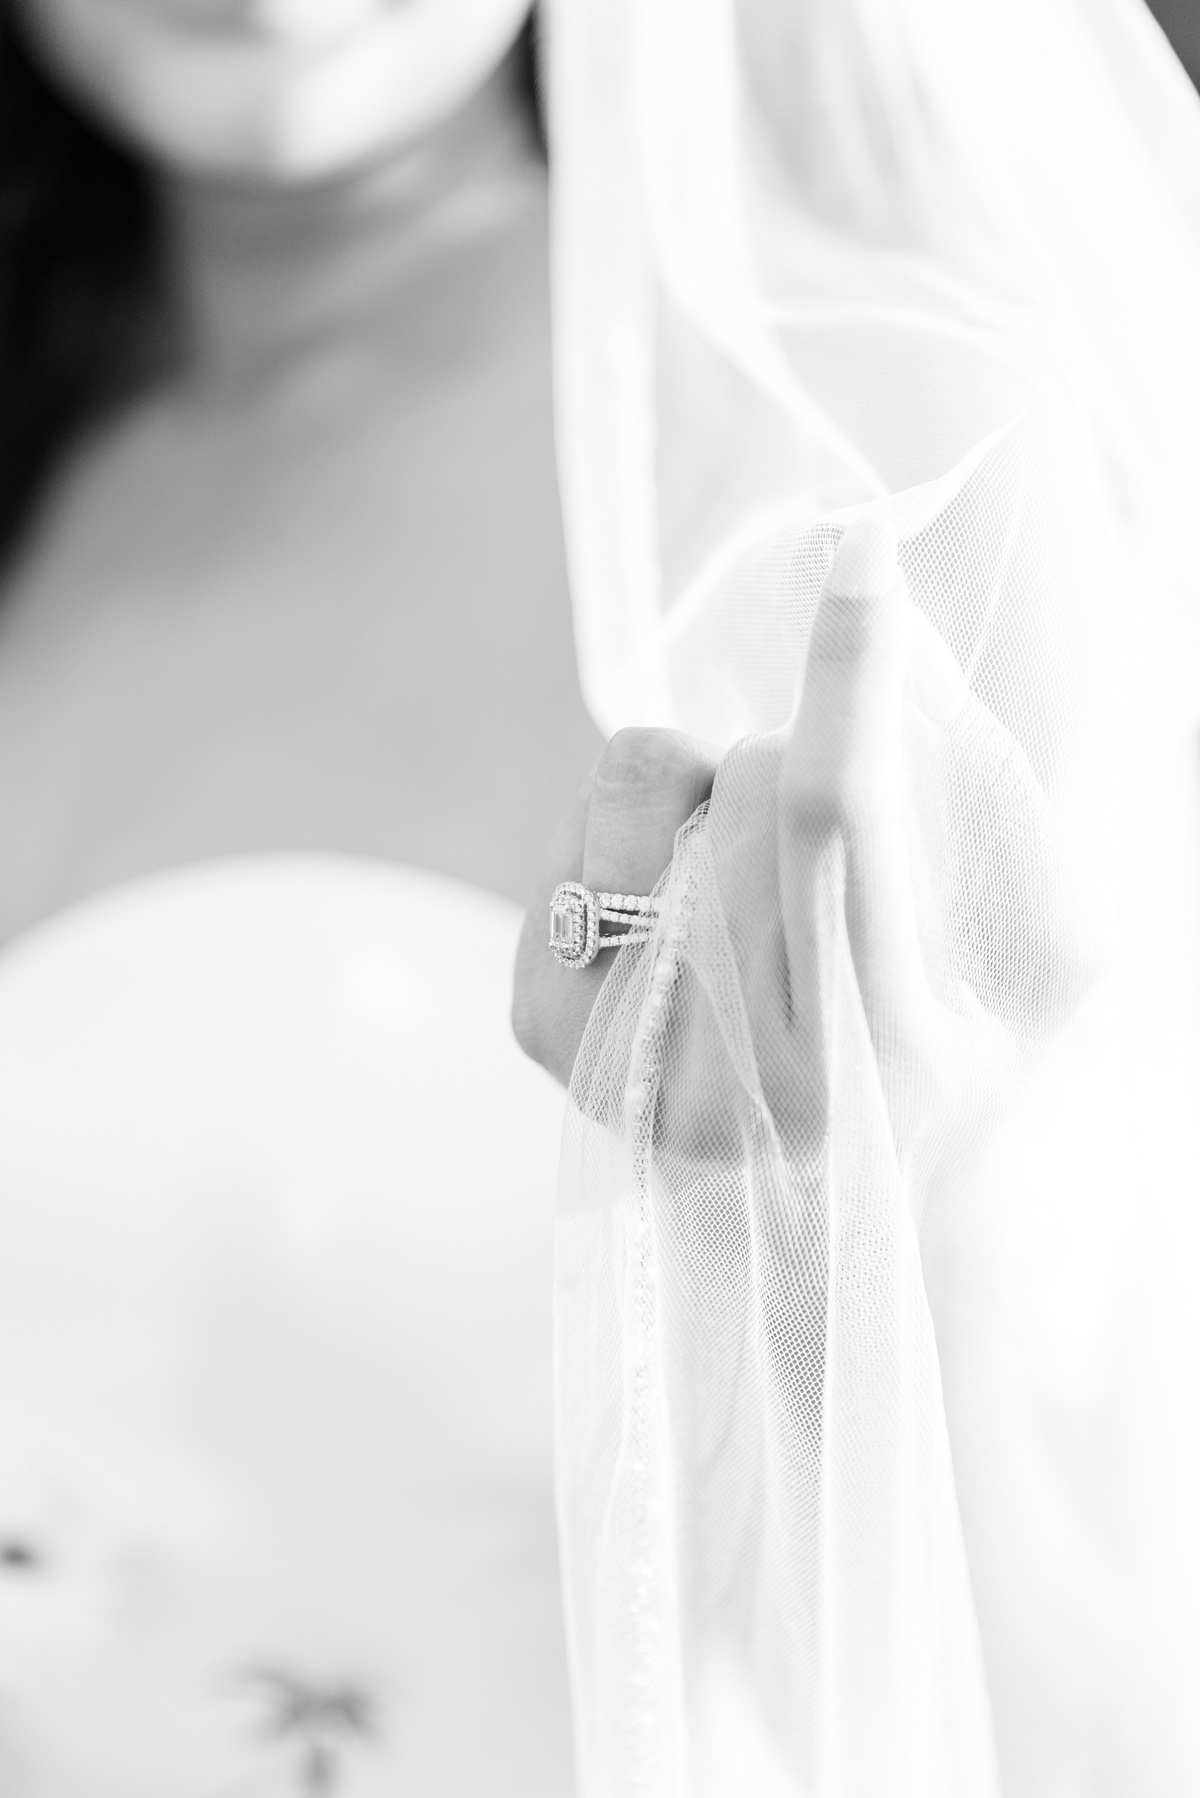 muckenthaler mansion wedding black and white bride veil shot